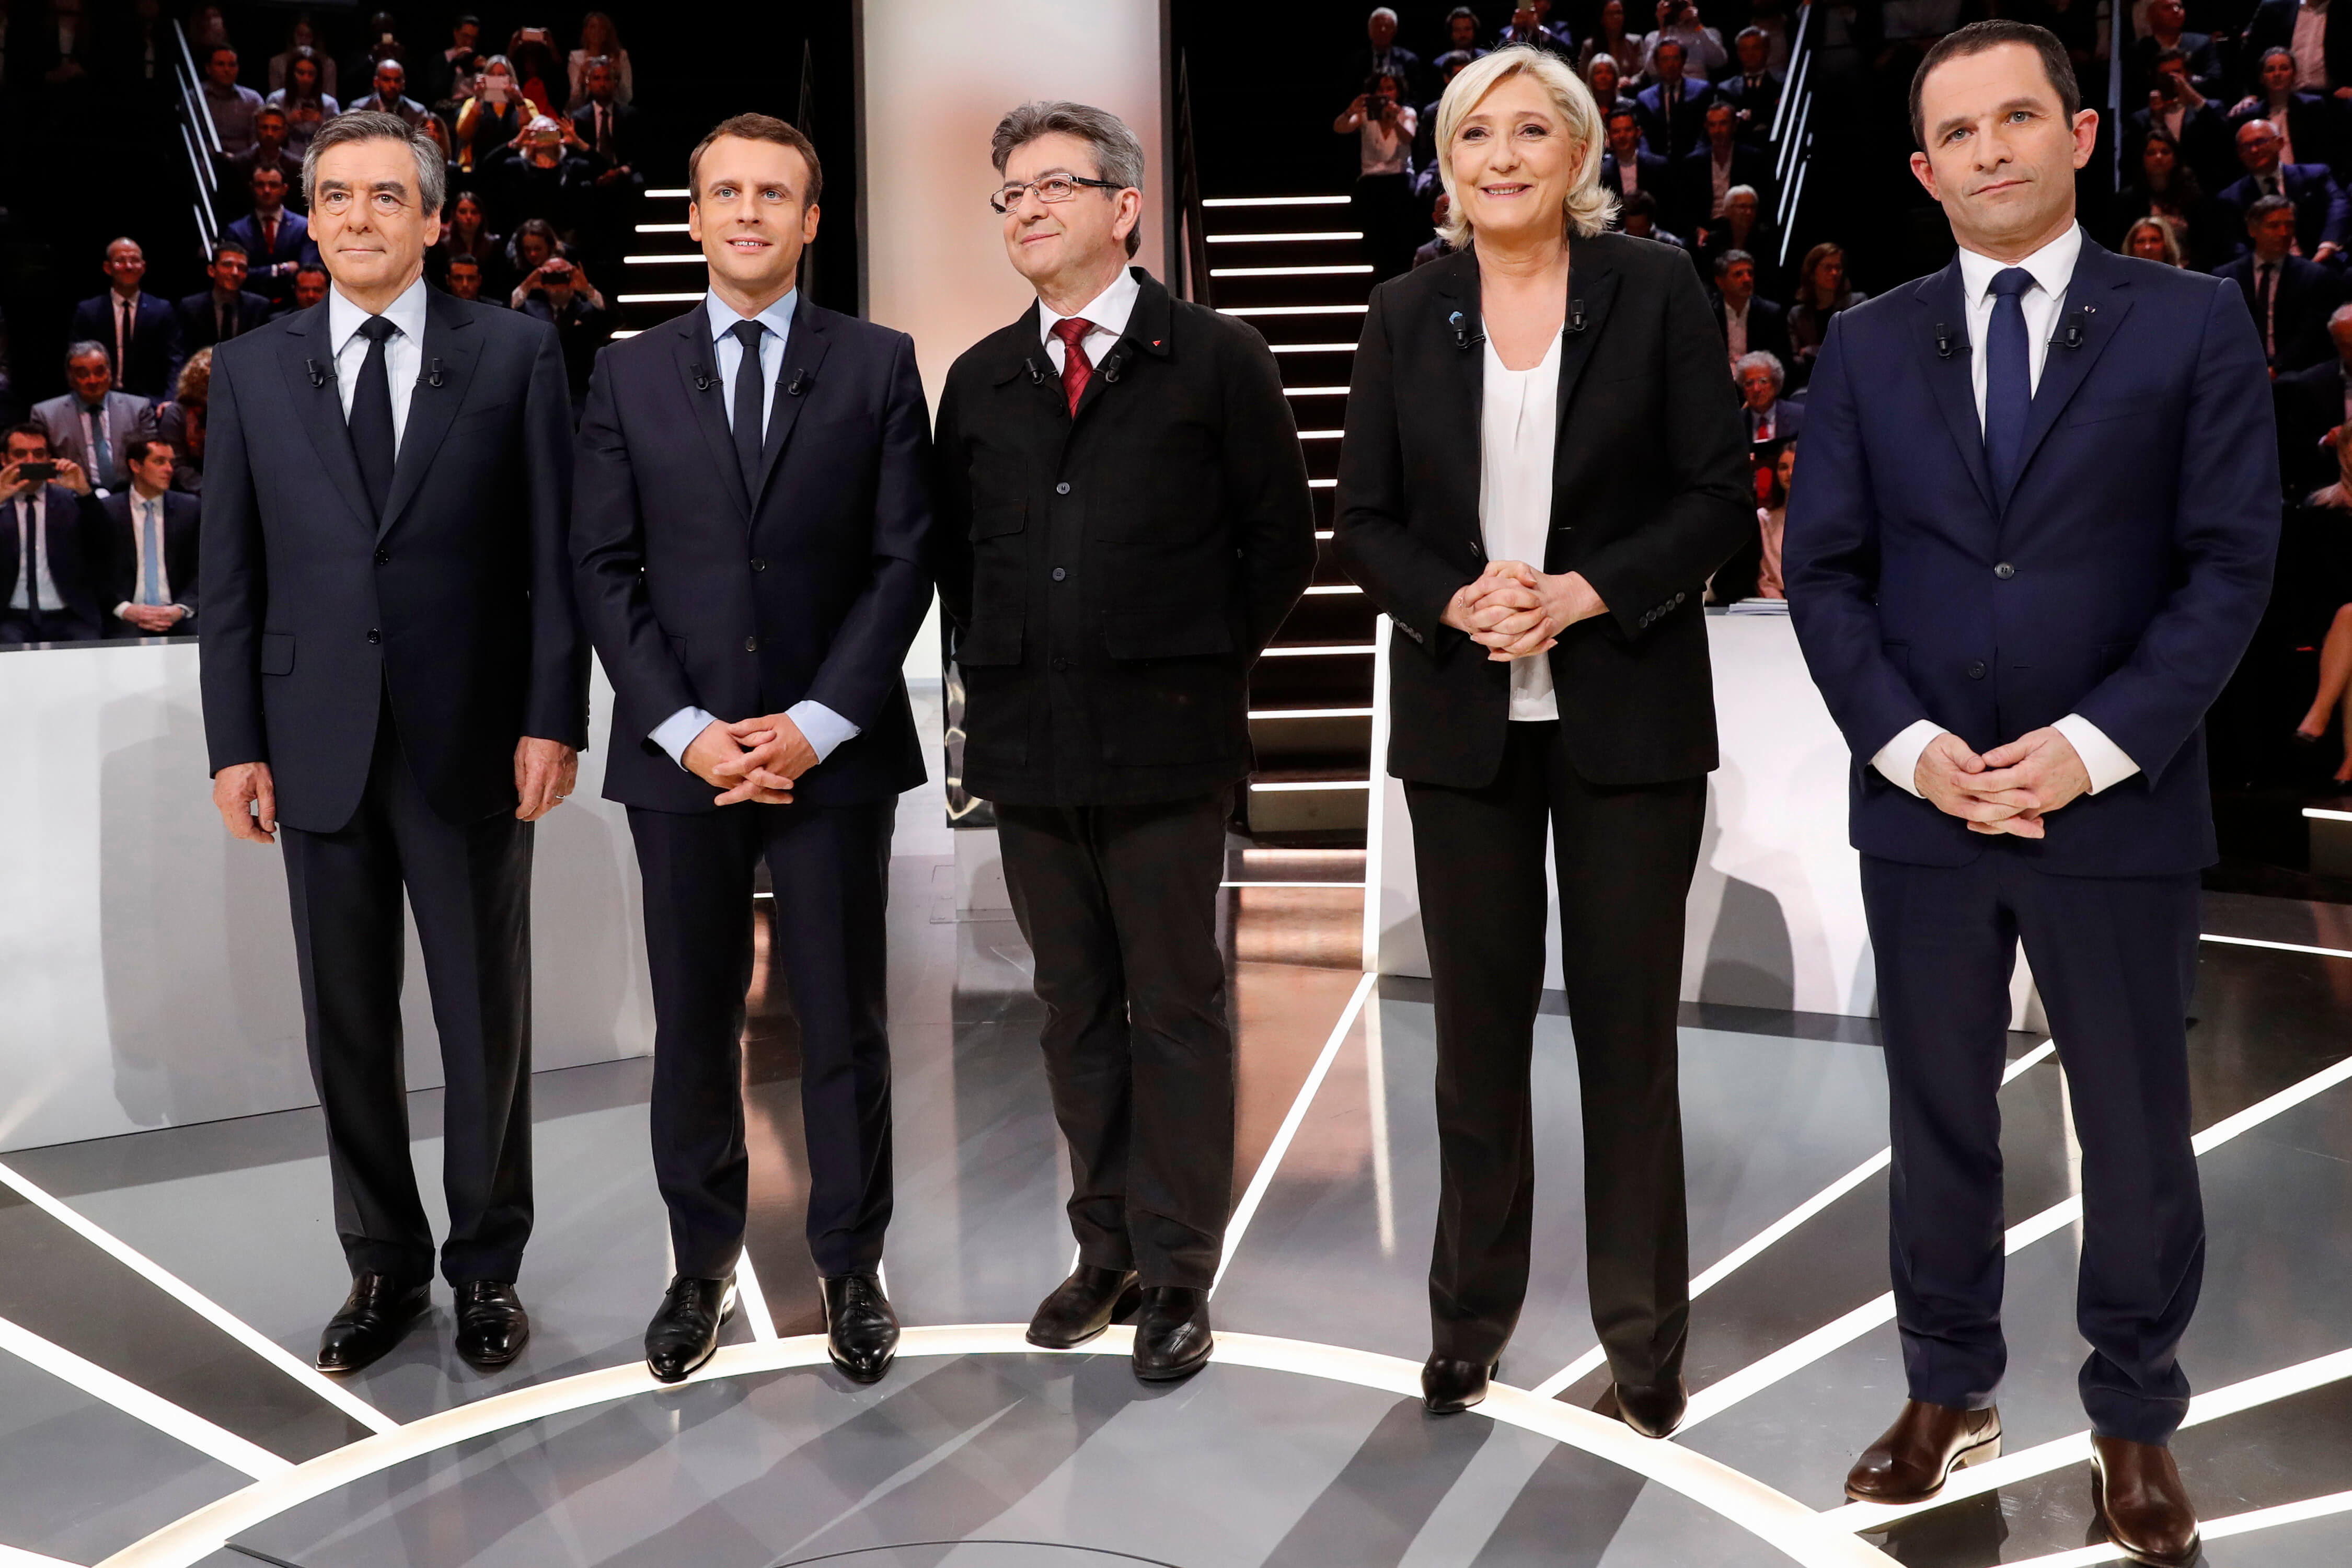 Los candidatos a la presidencia de Francia realizaron un debate televisivo.